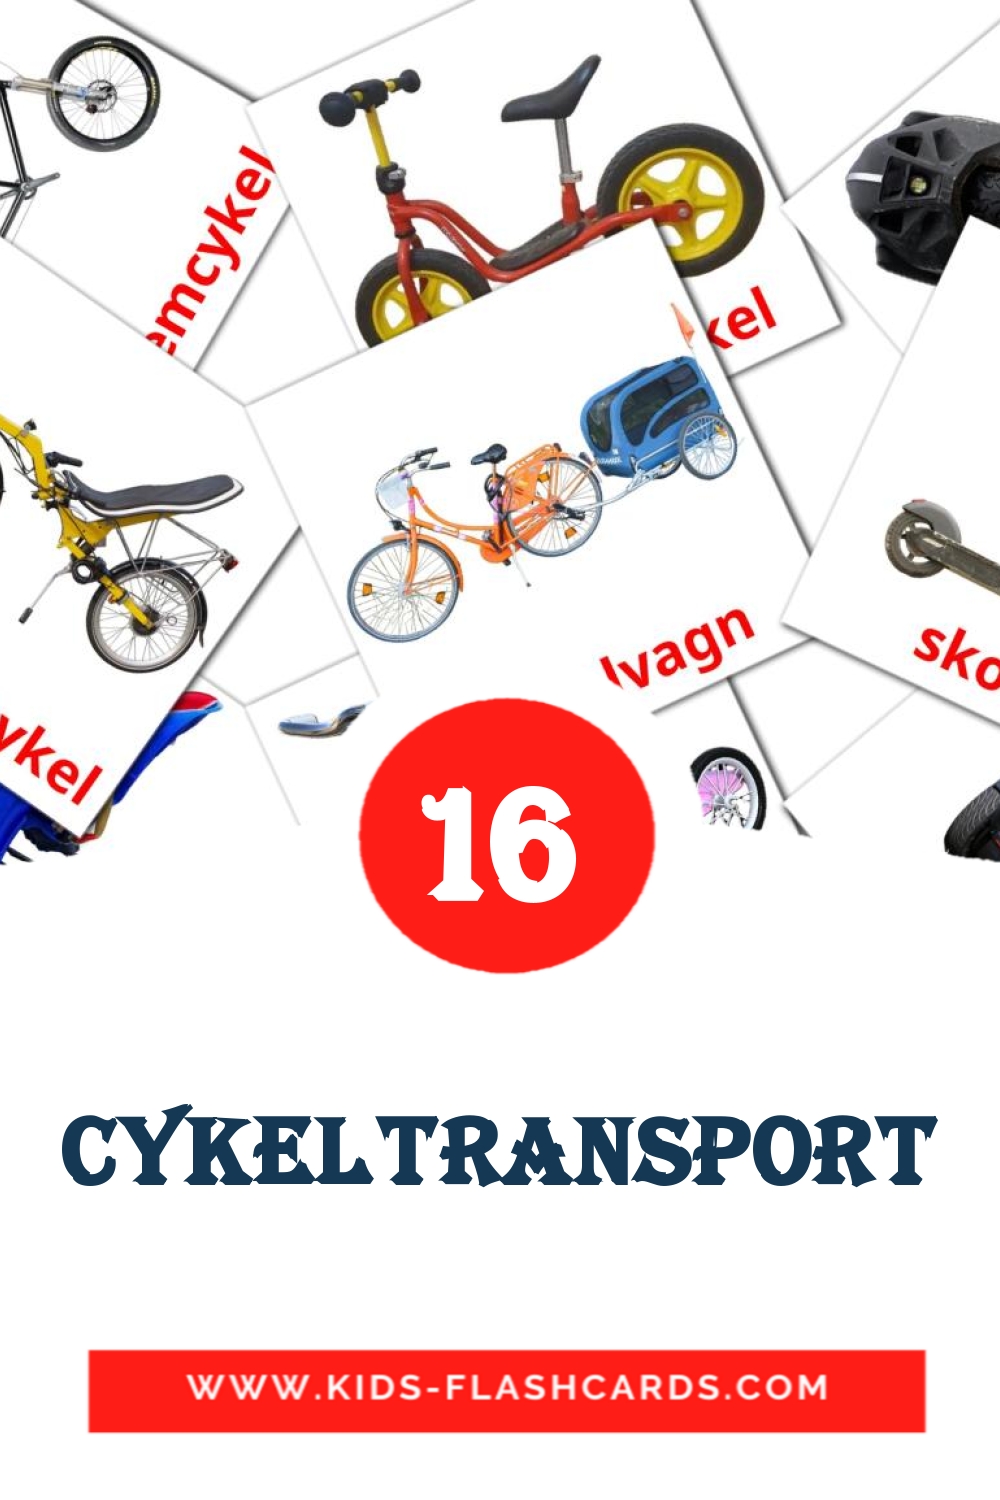 Cykeltransport на шведском для Детского Сада (16 карточек)